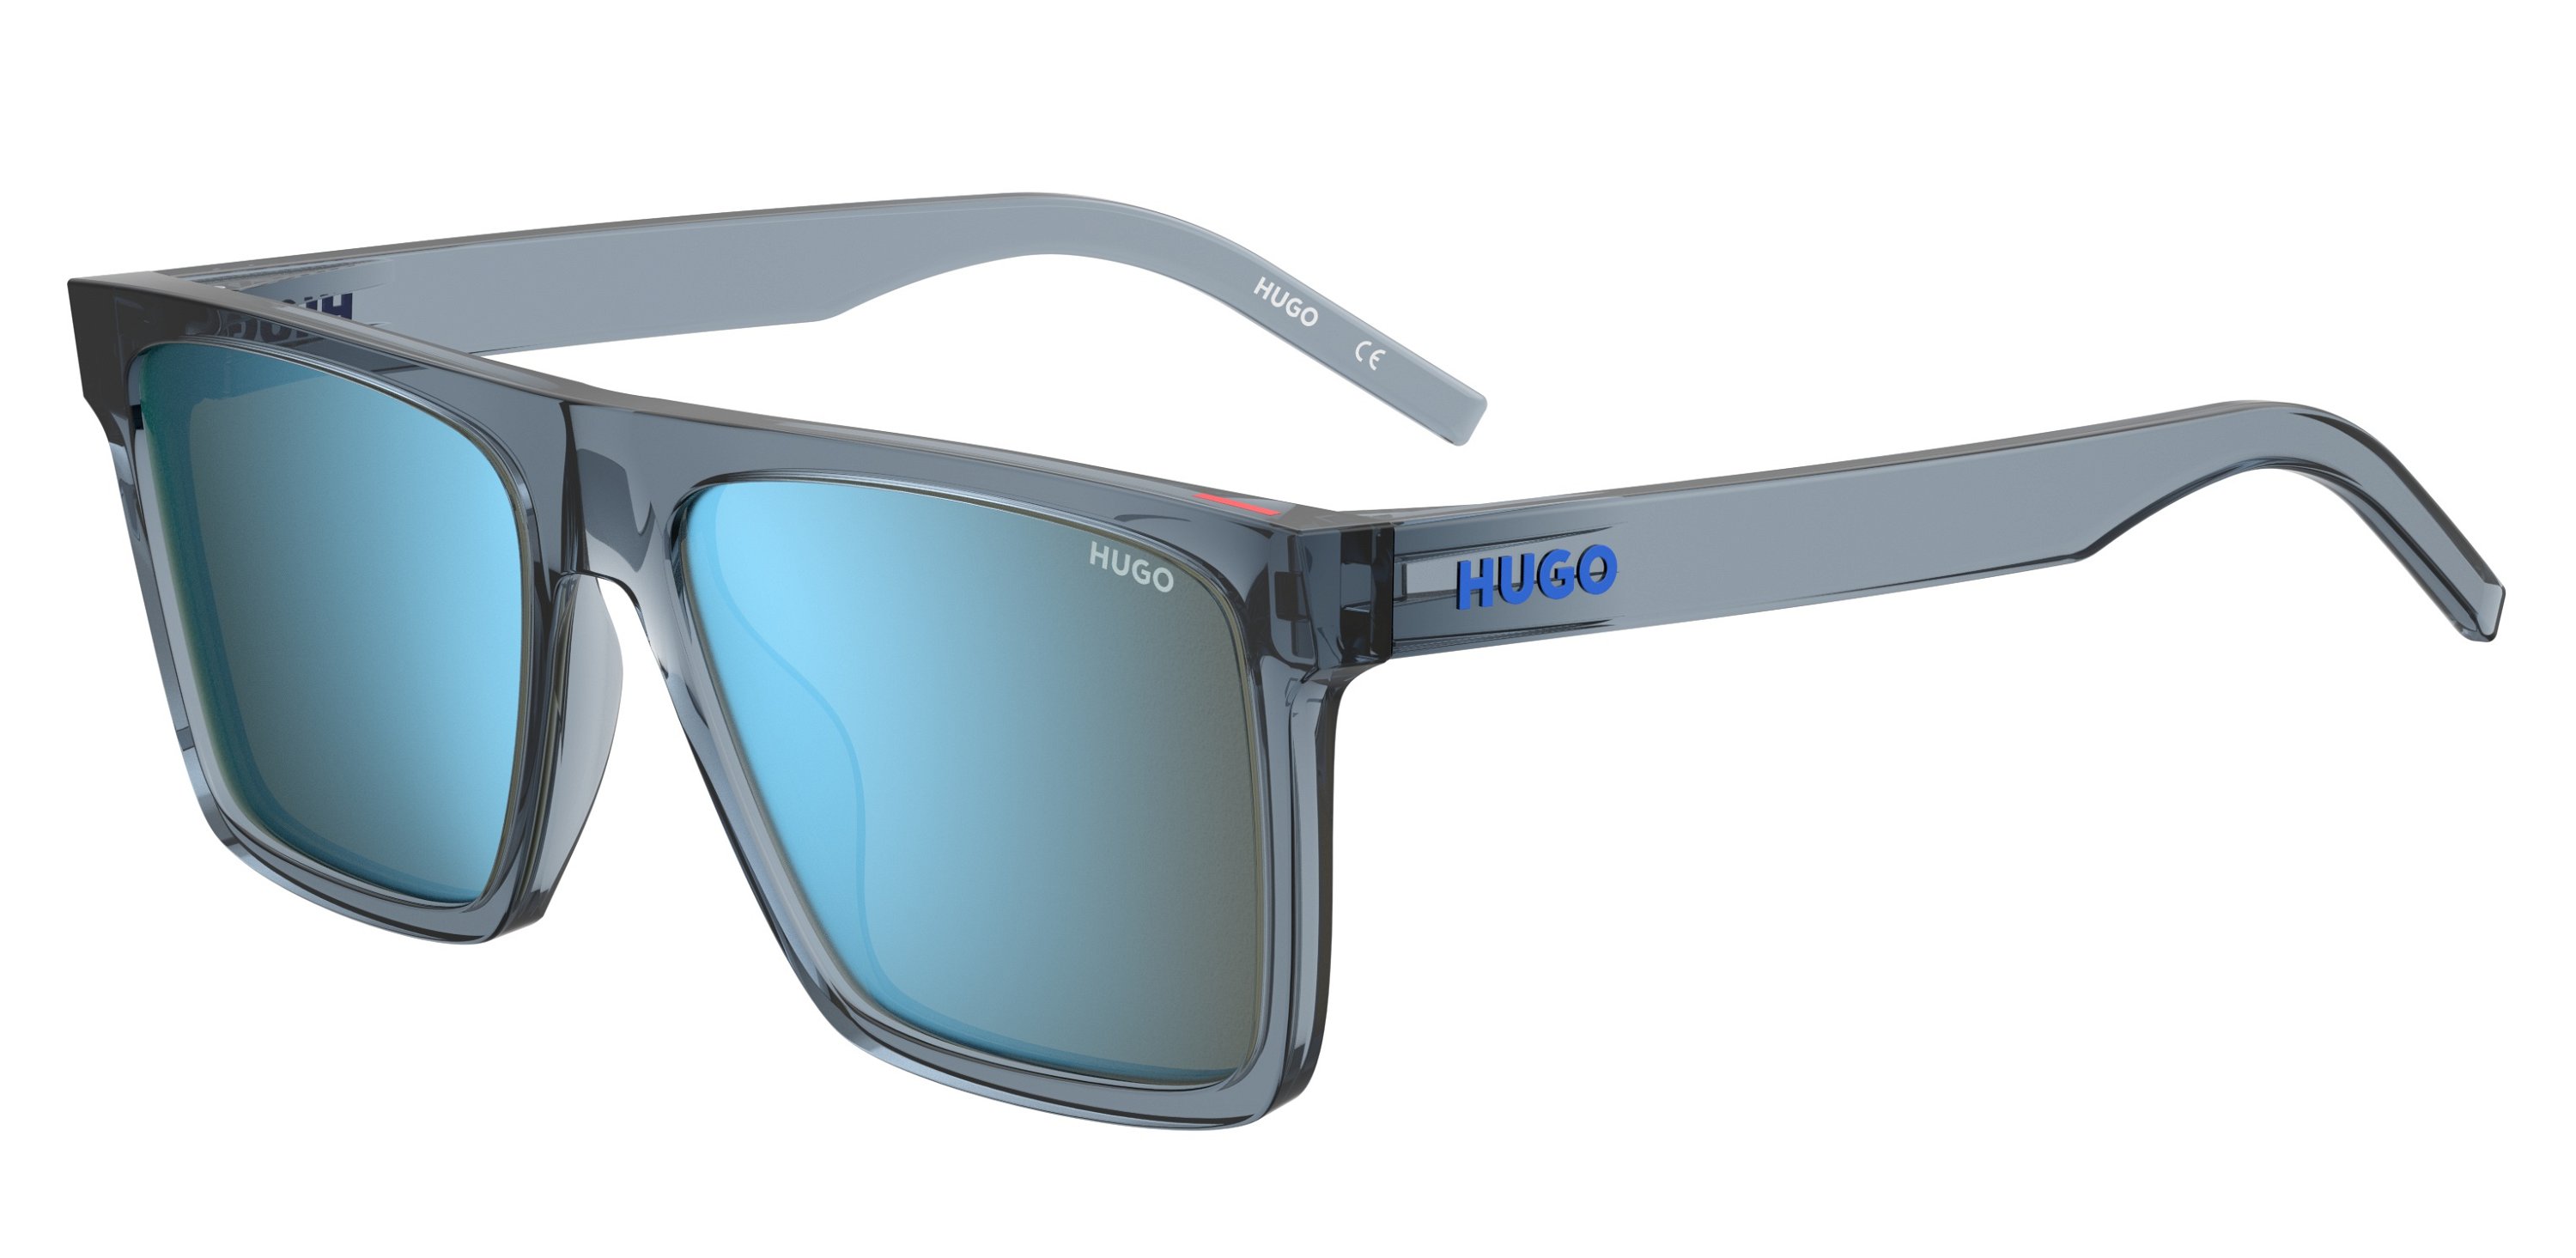 Das Bild zeigt die Sonnenbrille HG1069/S PJP von der Marke Hugo in blau.